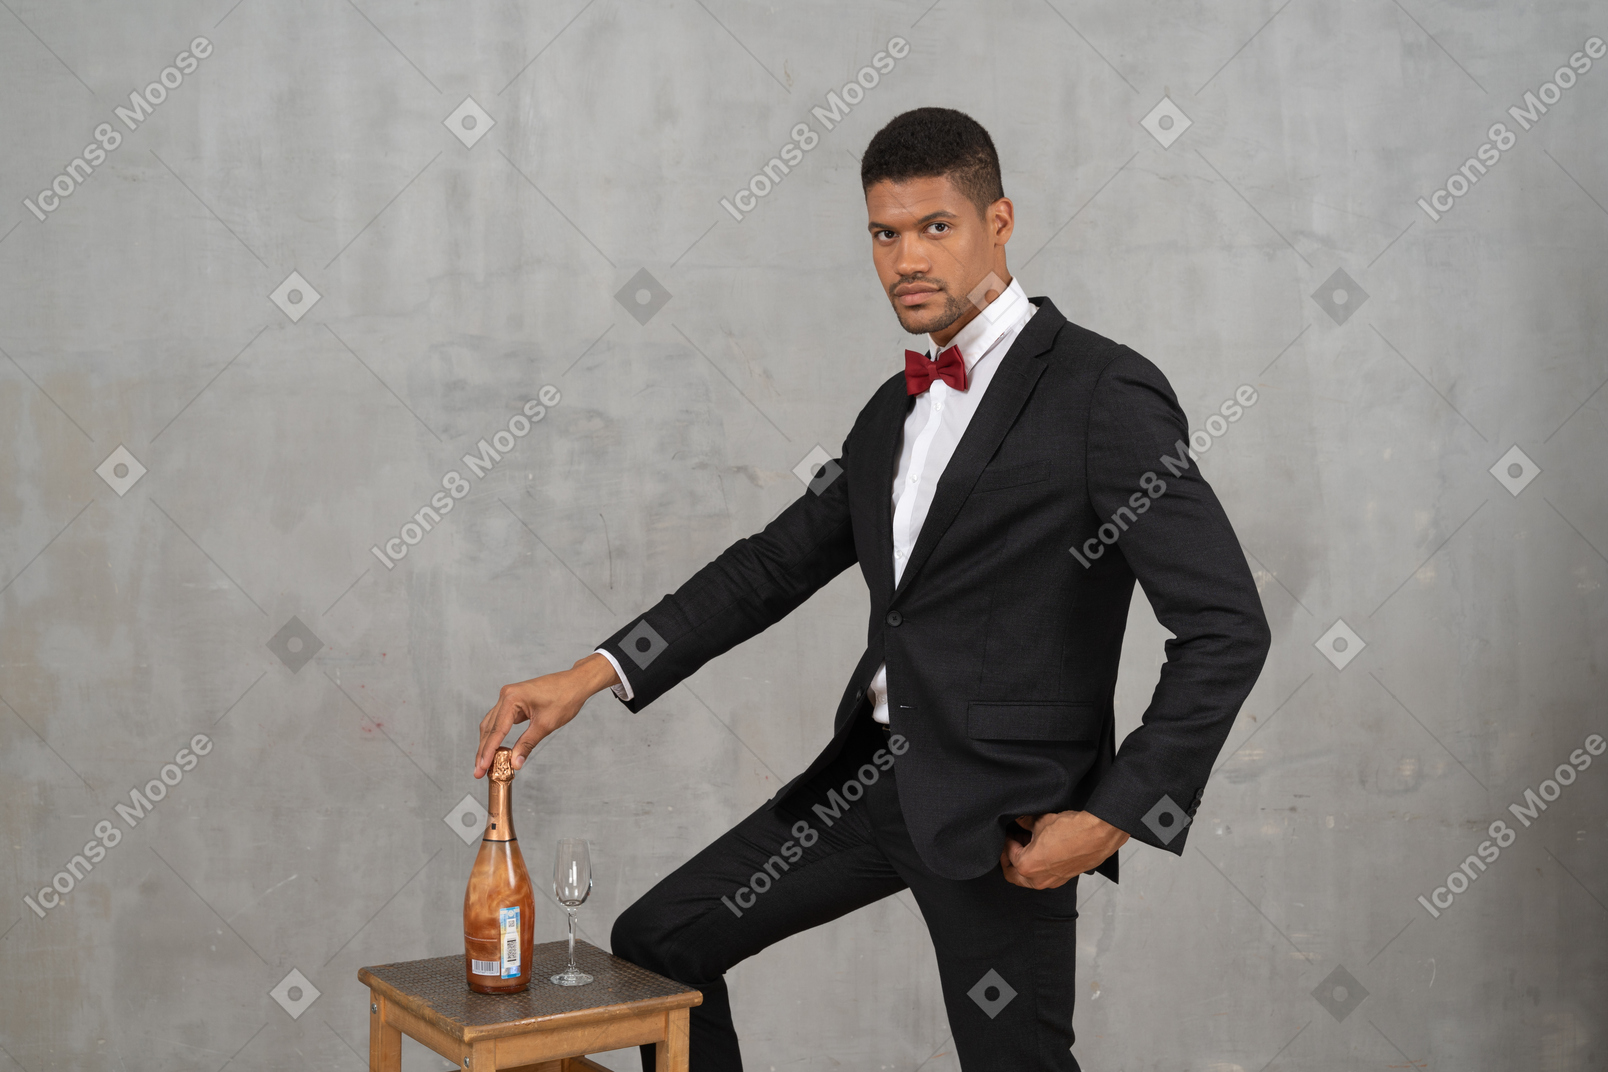 Homme debout avec la main sur une bouteille de champagne